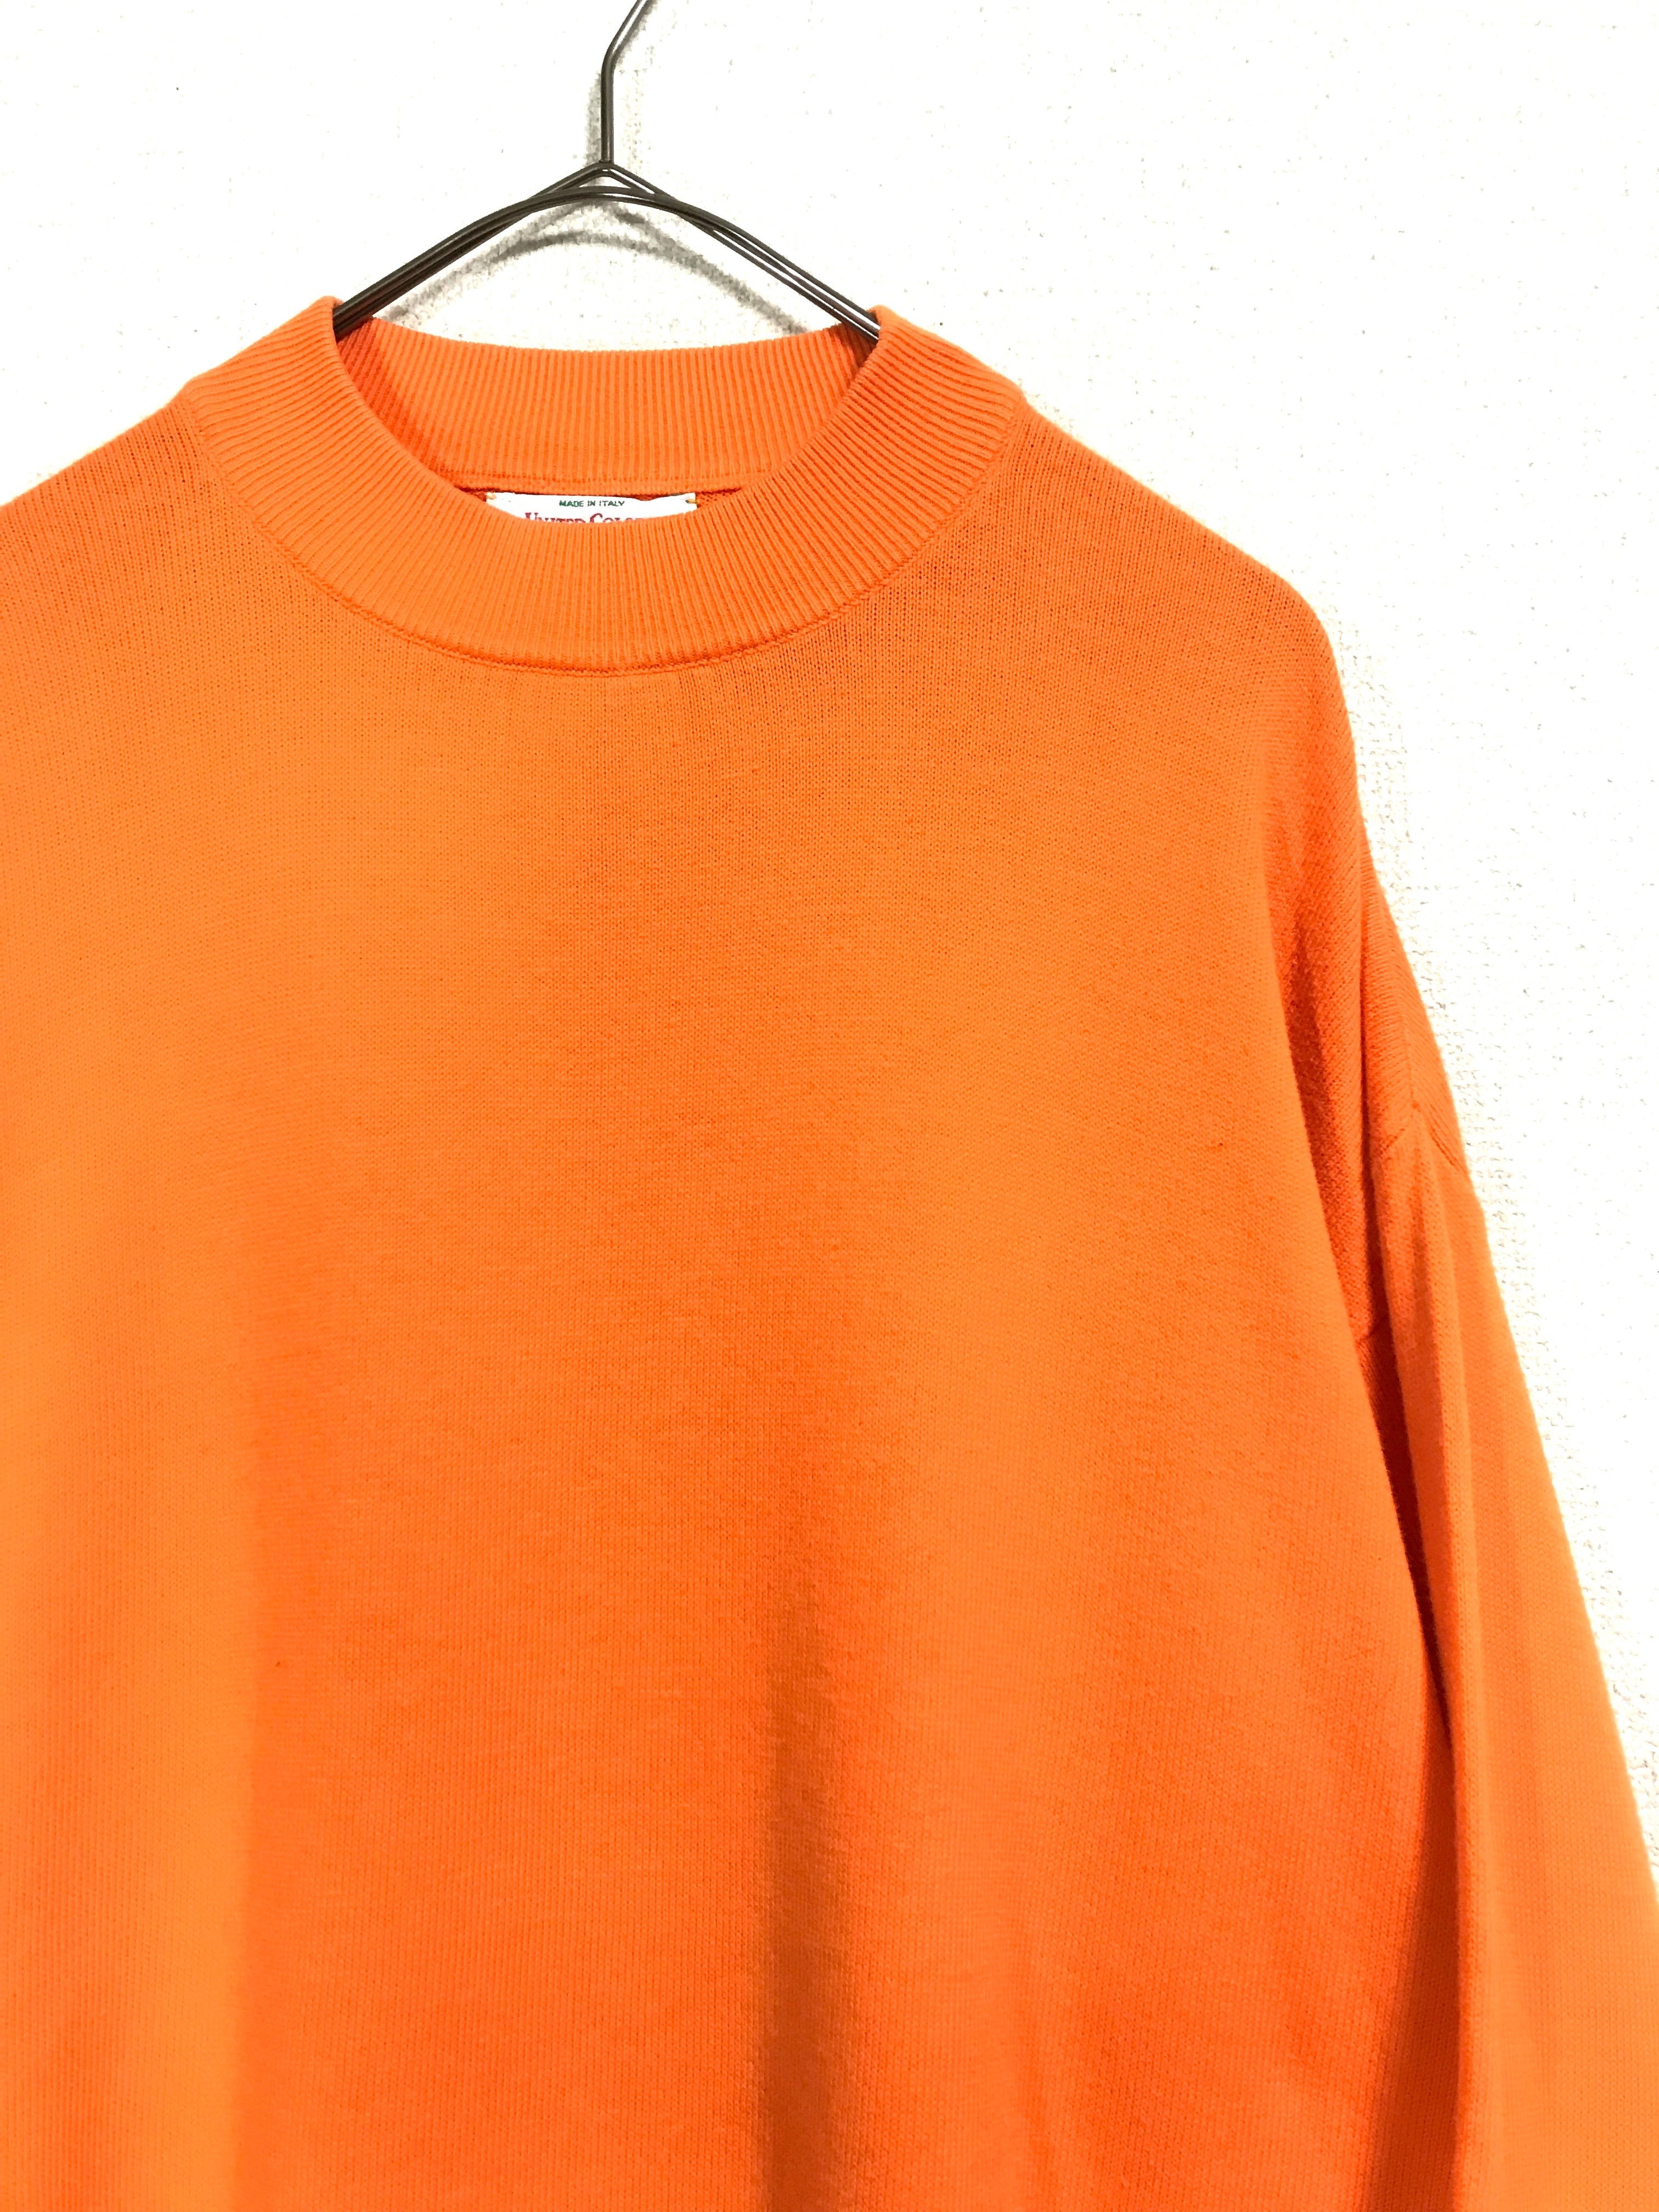 cotton mock neck hi-gauge knit pullover top